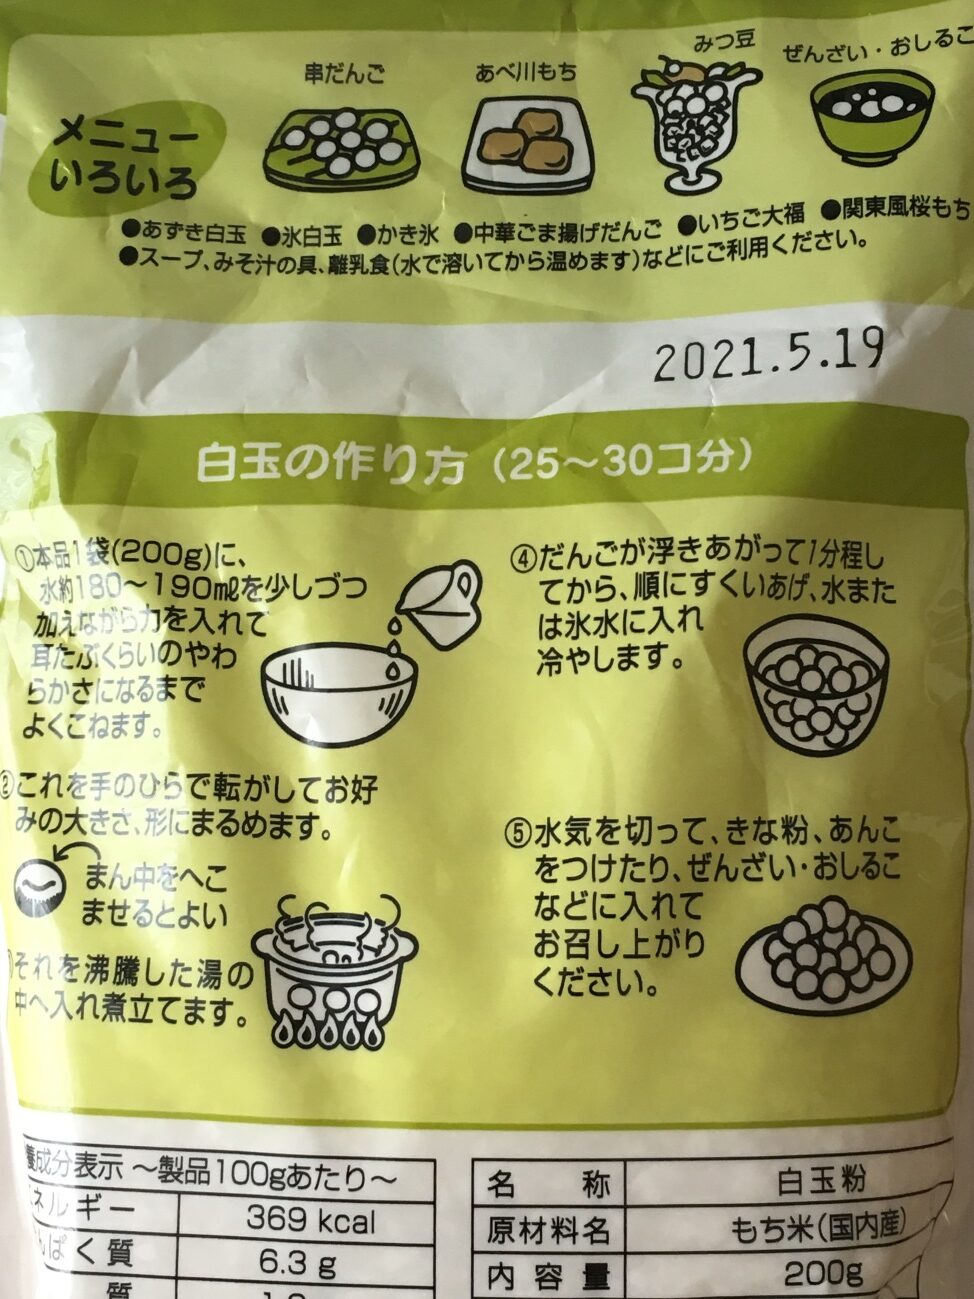 業務スーパーの白玉粉のパッケージに記載されている白玉の作り方